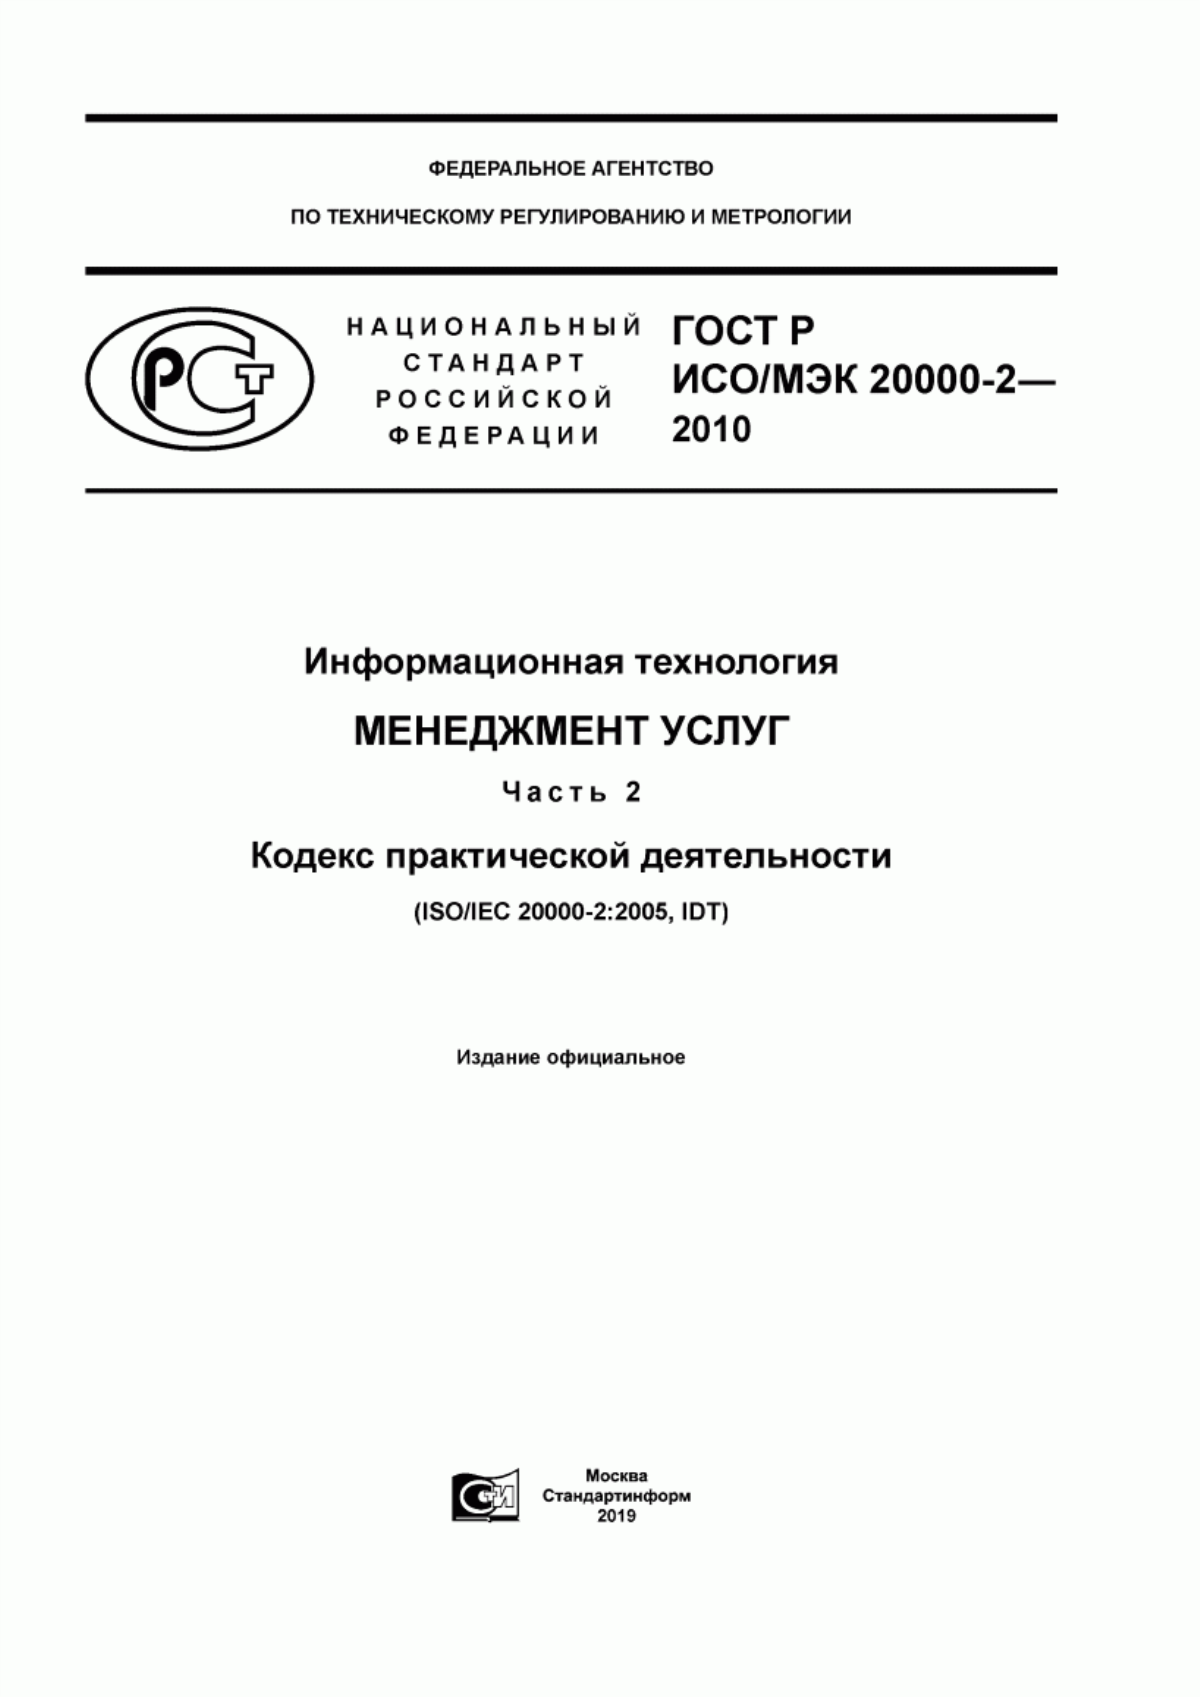 ГОСТ Р ИСО/МЭК 20000-2-2010 Информационная технология. Менеджмент услуг. Часть 2. Кодекс практической деятельности